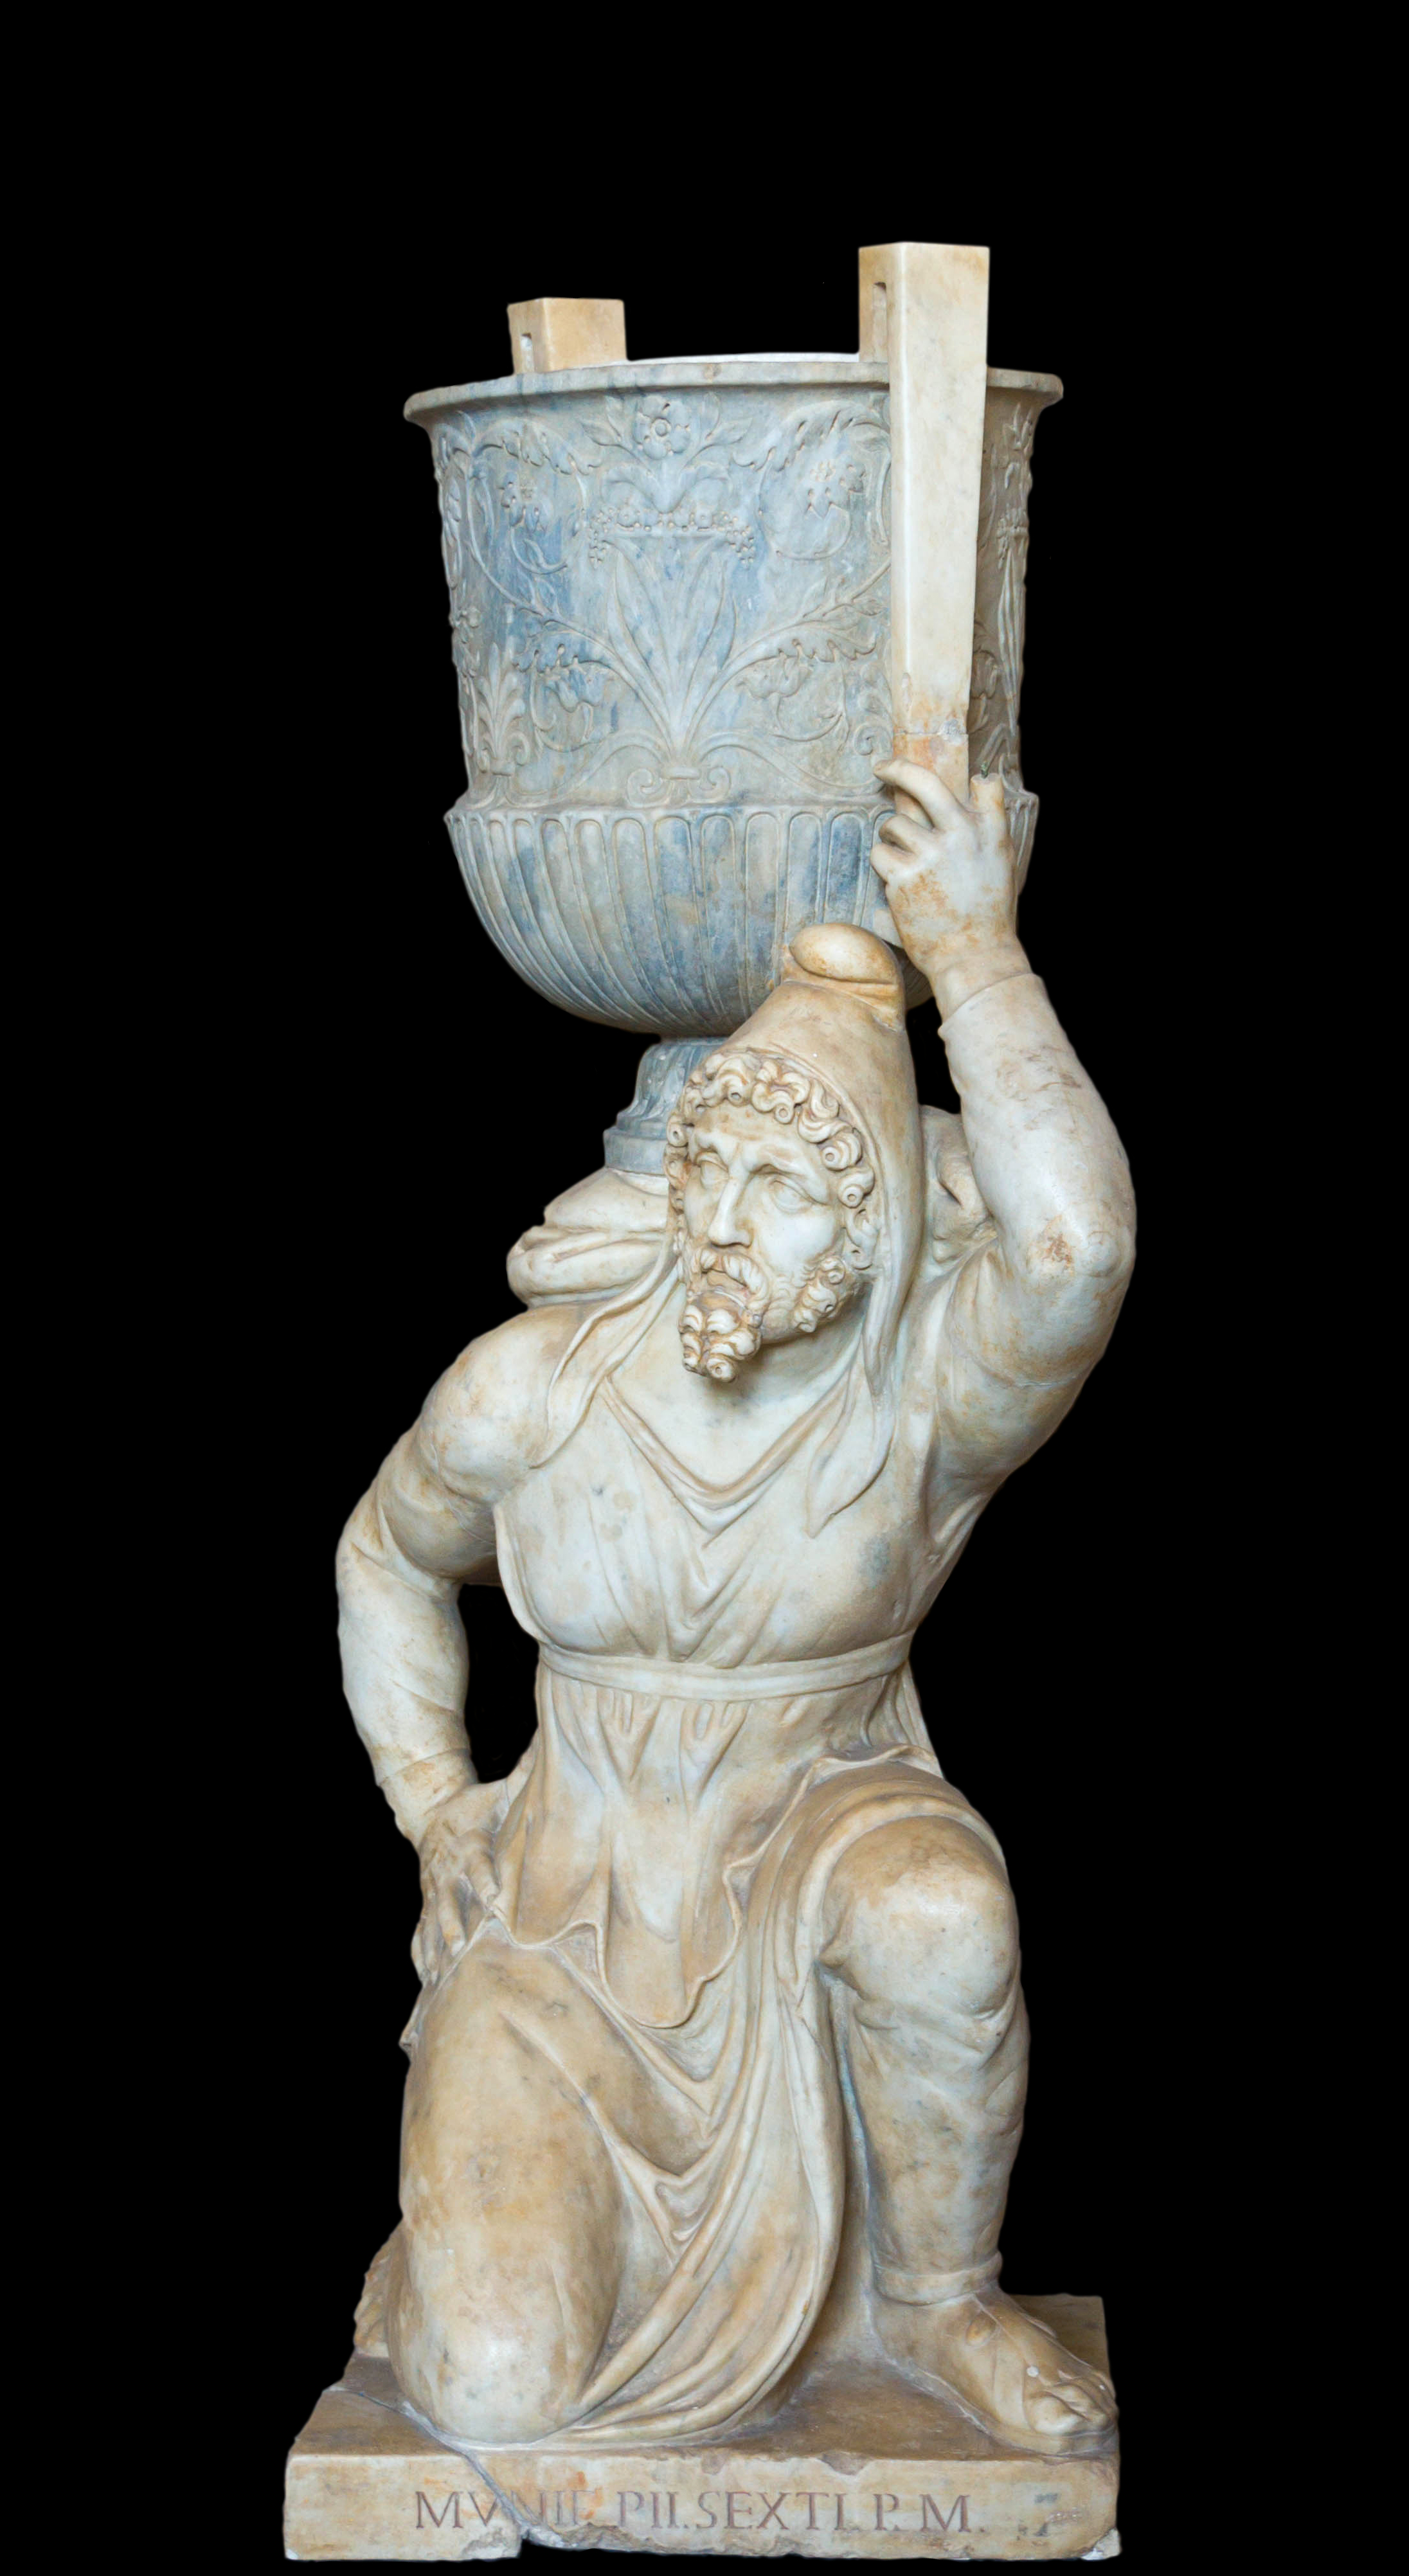 Statue Persan au vase, par Franzoni, 1791, inv. 2494, Vatican 13